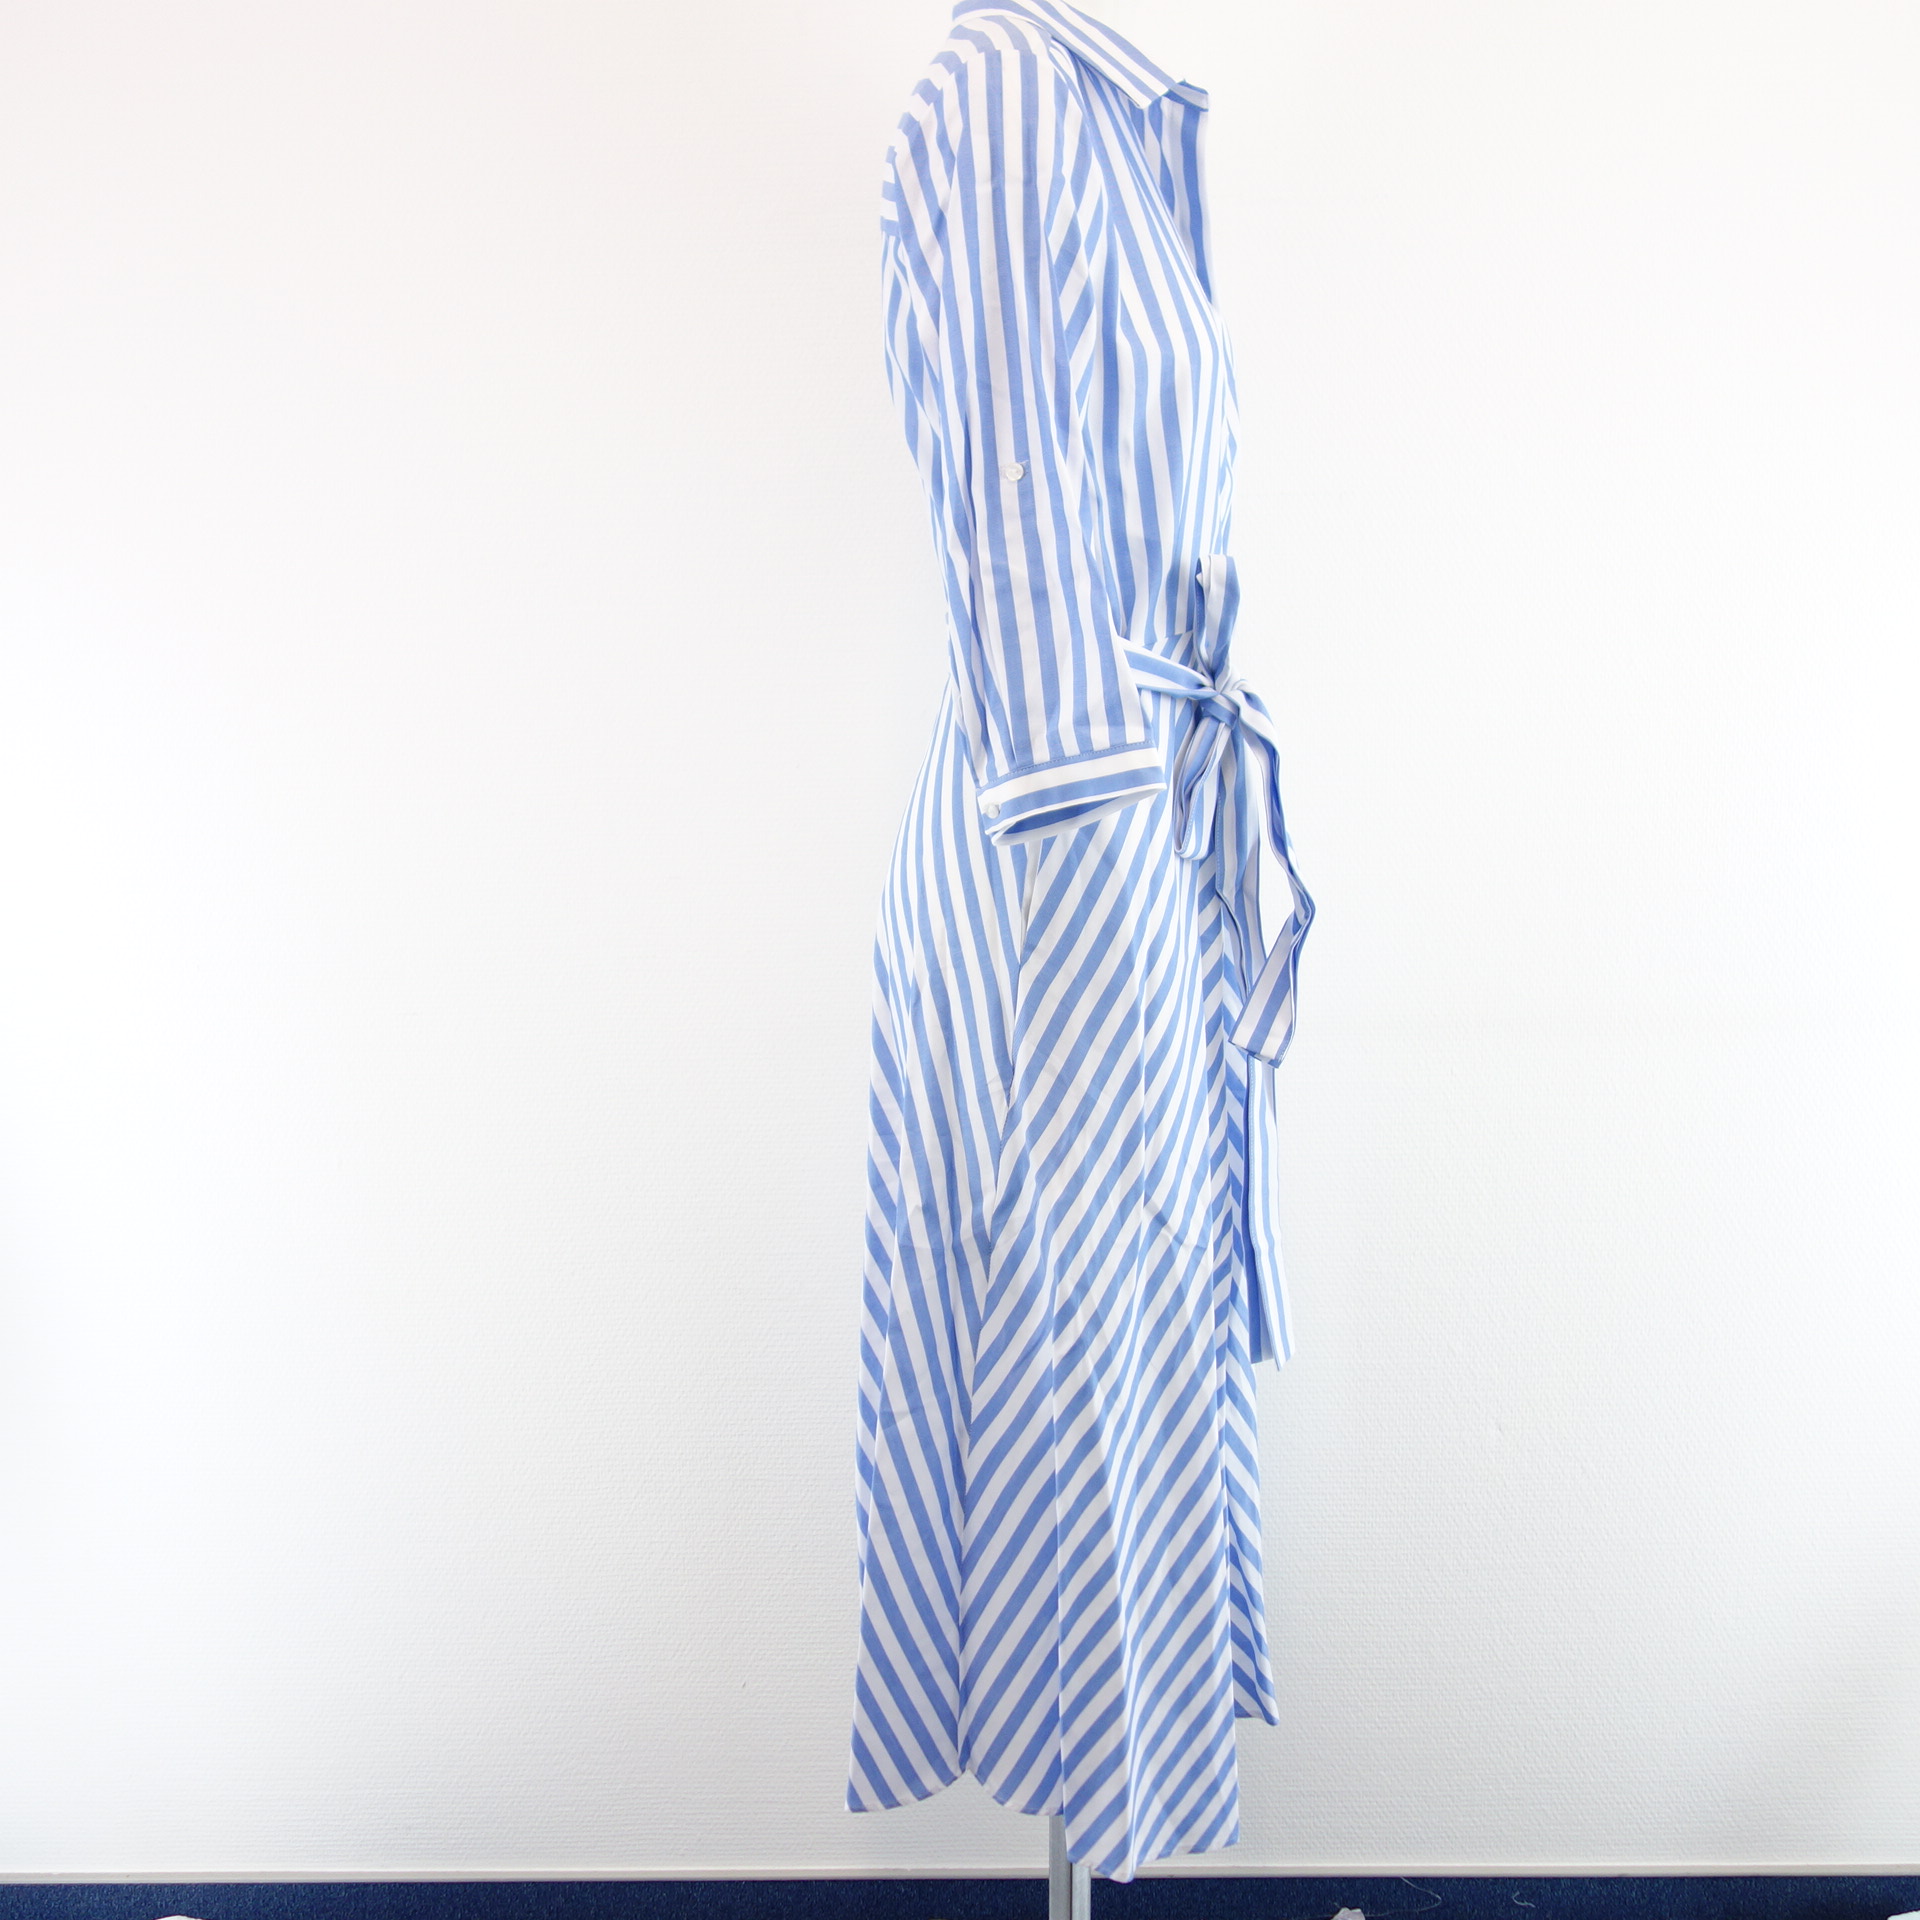 MILANO ITALY Langes Damen Kleid Blau Weiß Gestreift 100% Baumwolle